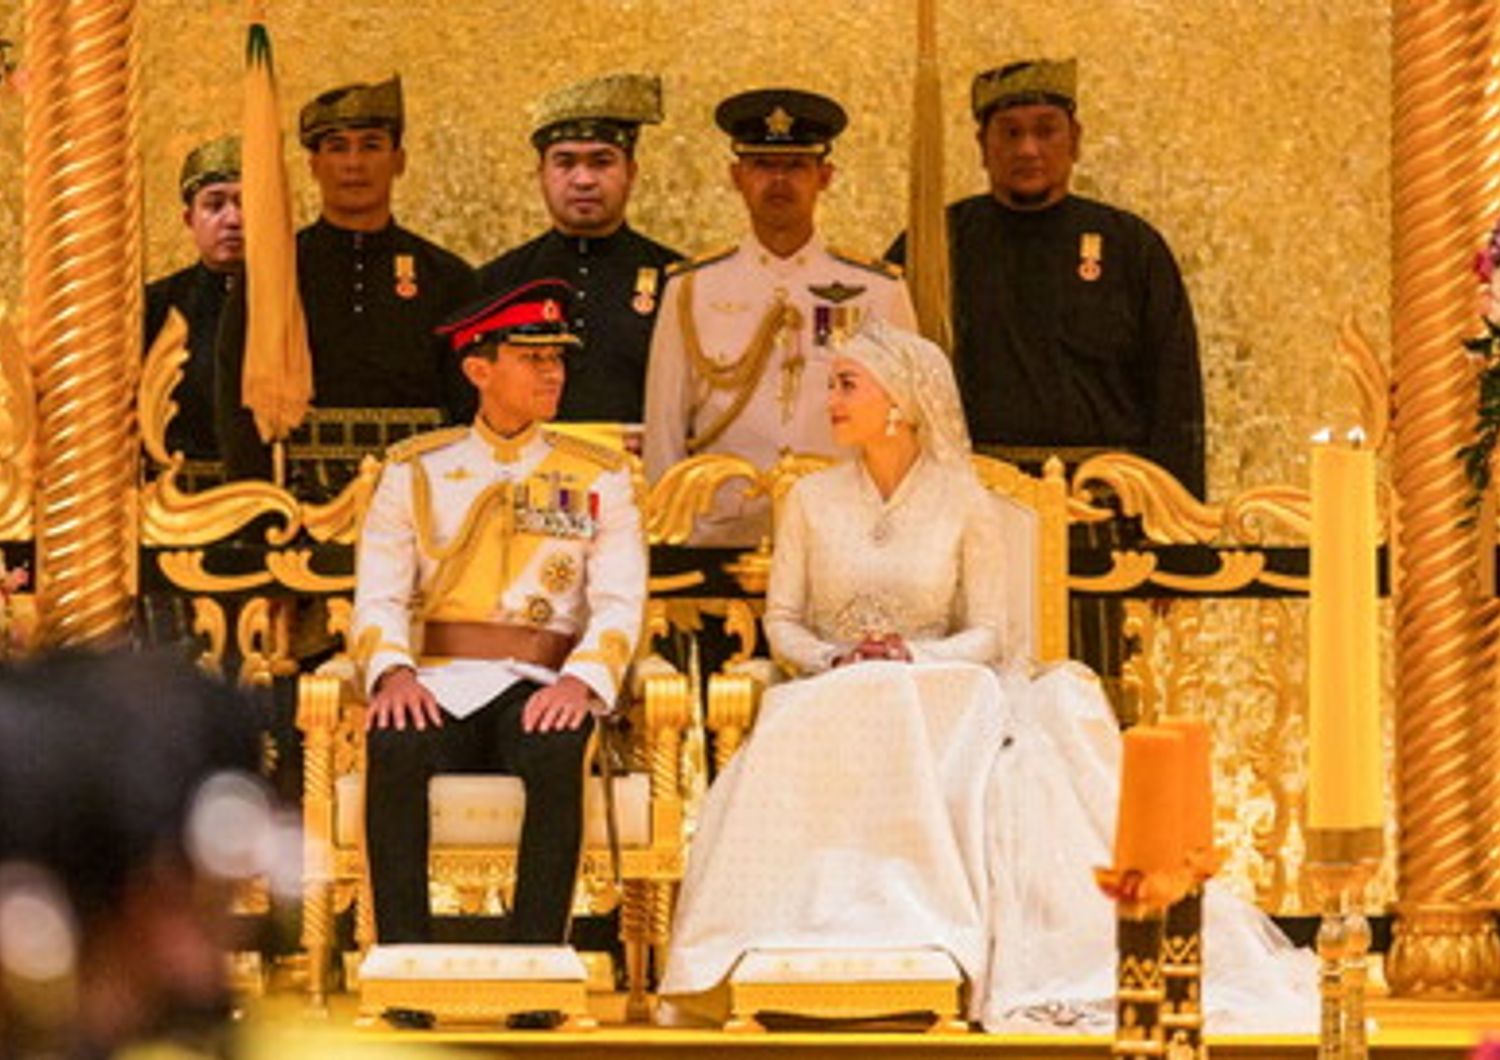 Le nozze da favola del principe del Brunei